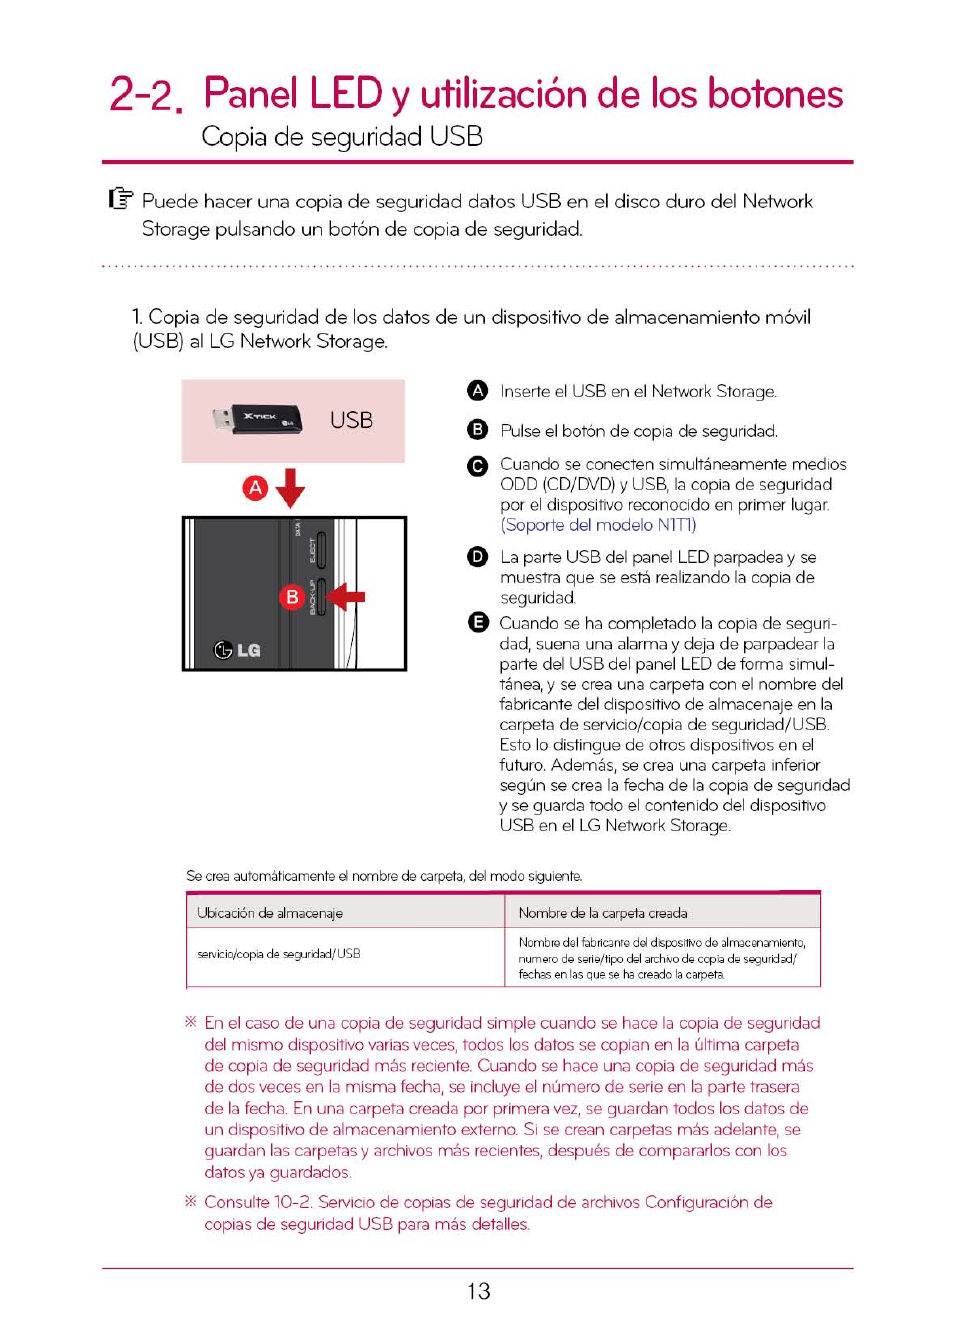 2. panel led y utilización de los botones, Copia de seguridad usb | LG N1T1DD1 Manual del usuario | Página 13 / 110